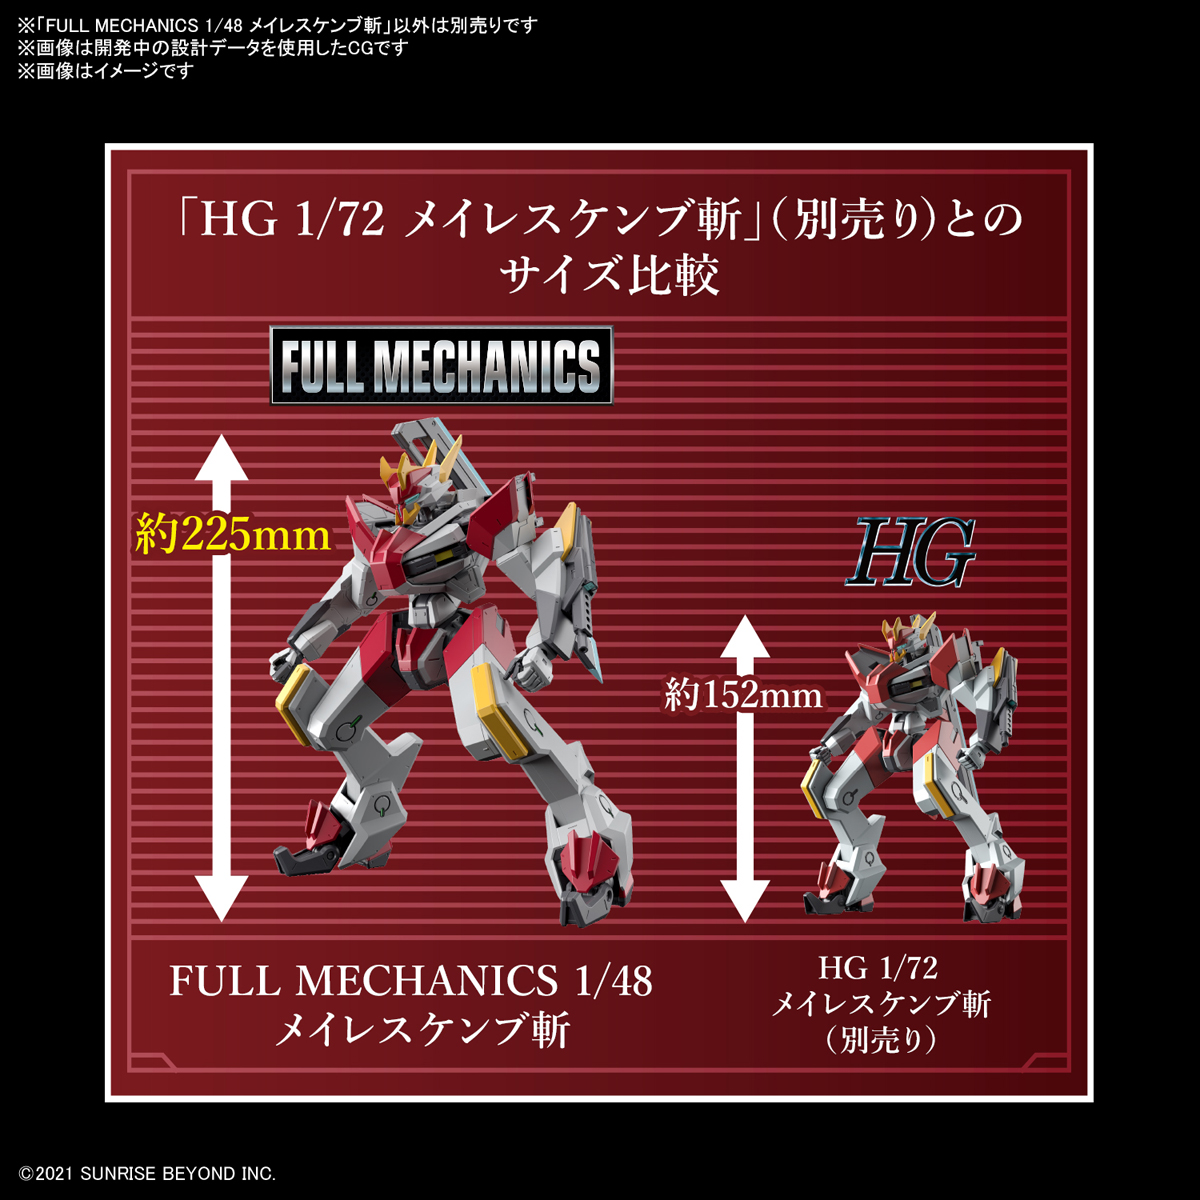 FULL MECHANICS 1/48『メイレスケンブ斬』境界戦機 プラモデル-010